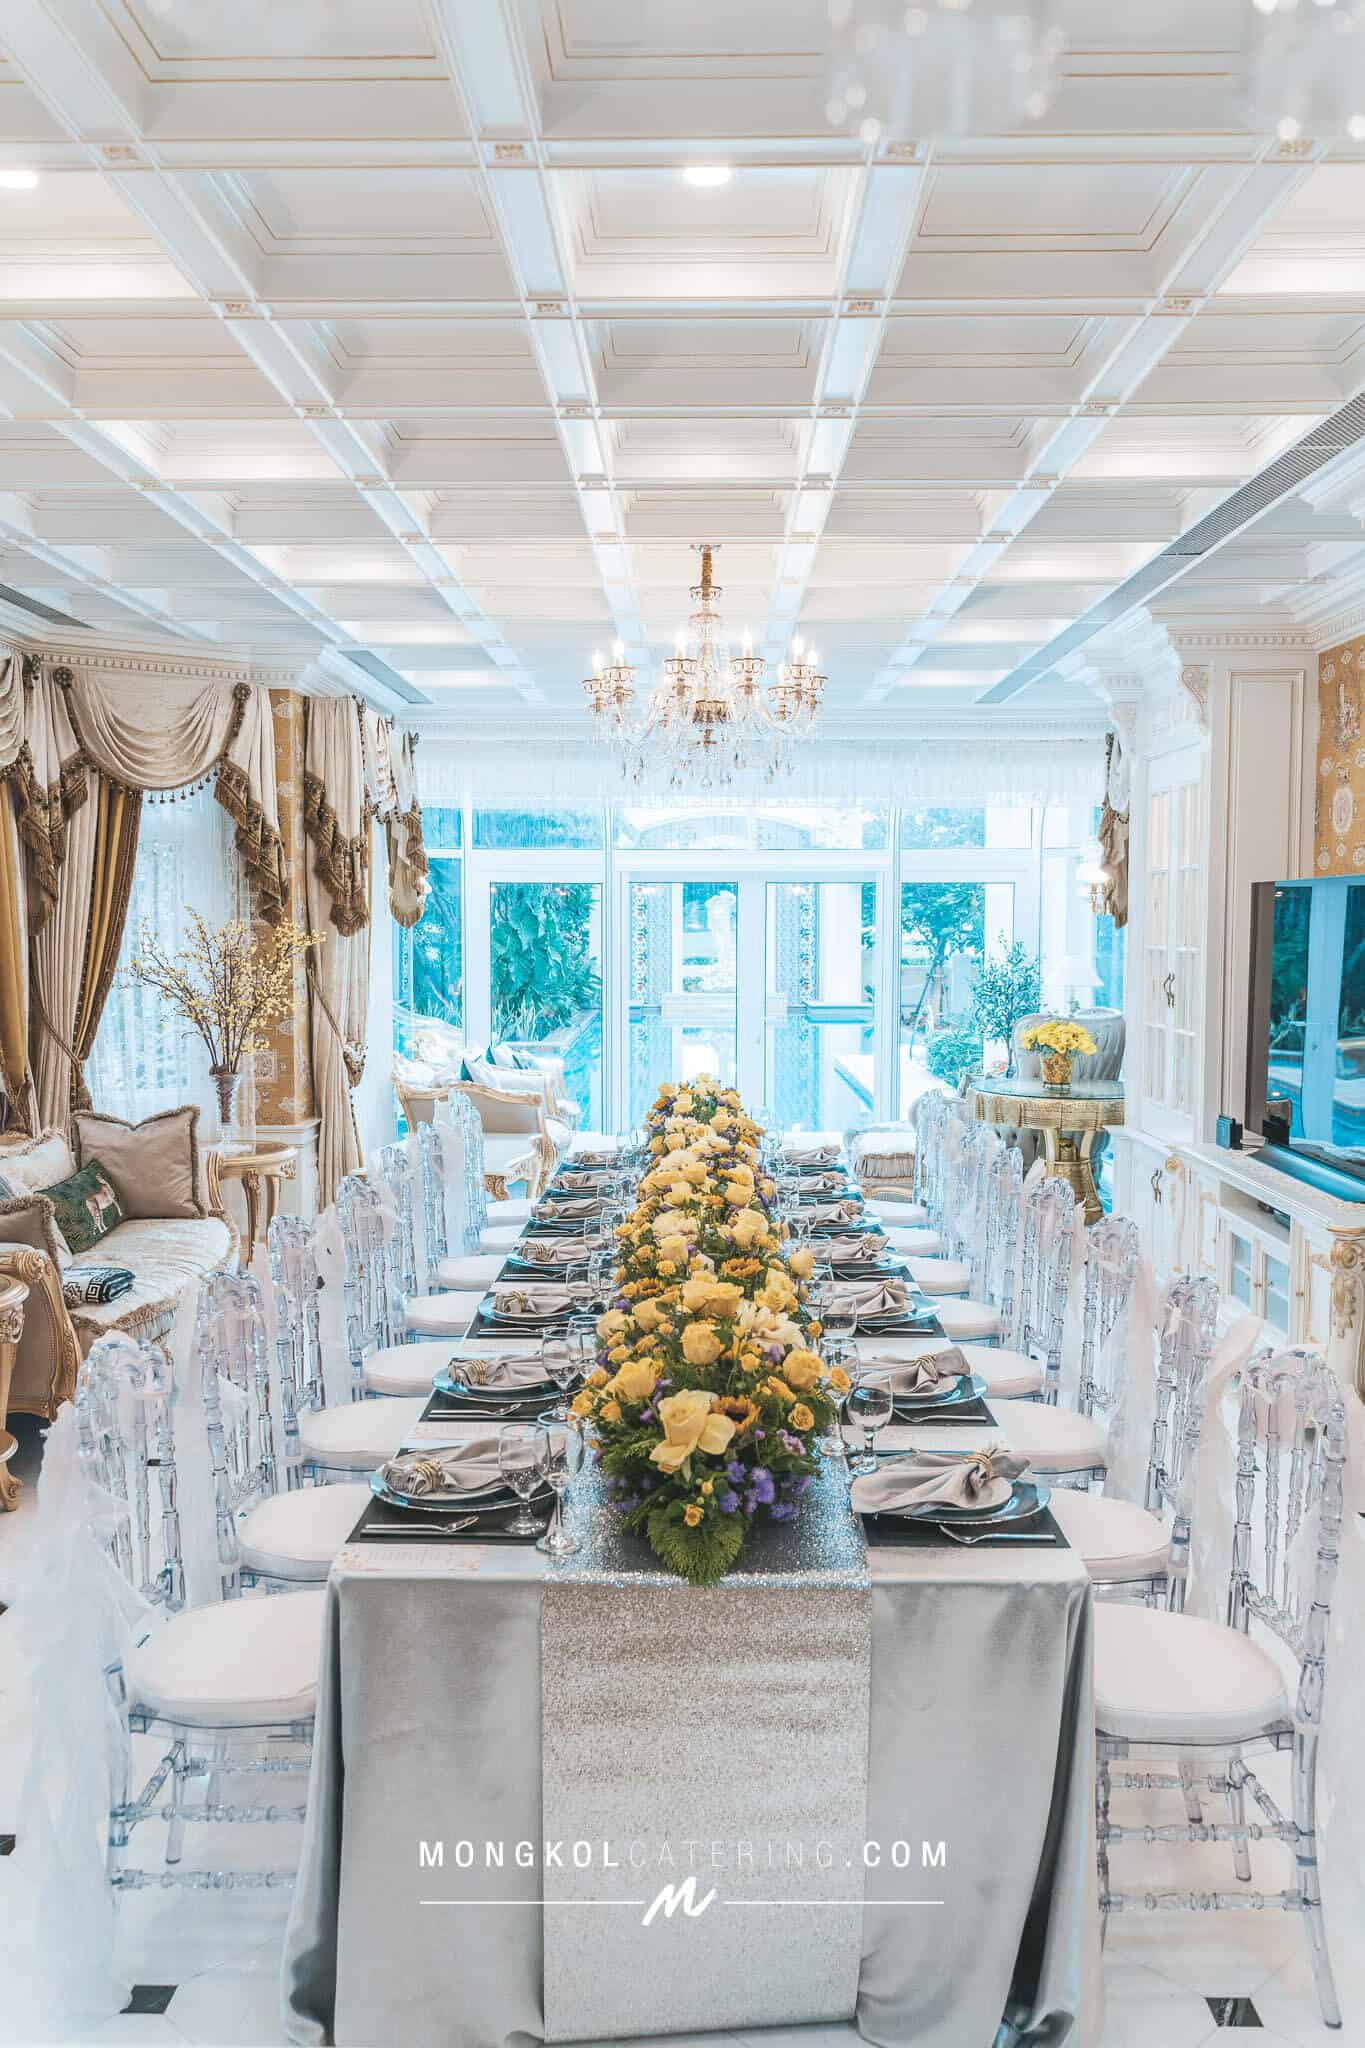 จัดเลี้ยงโต๊ะจีน แบบ Long Table @ The Royal Residence